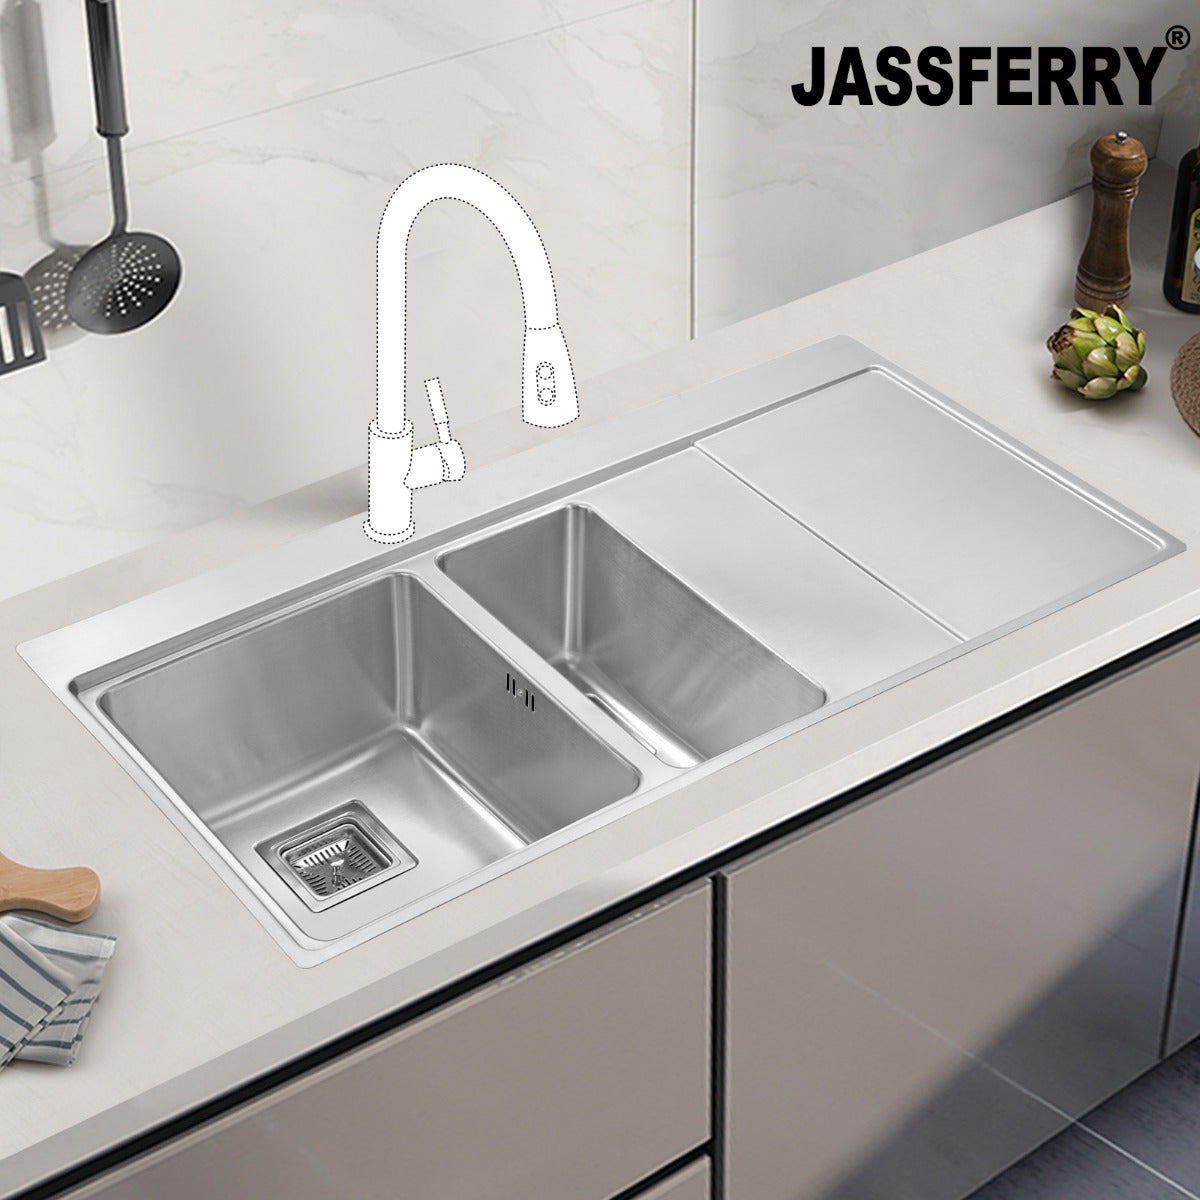 JassferryJASSFERRY Brilliant Stainless Steel Kitchen Sink One&Half Bowl Right hand DrainerKitchen Sinks